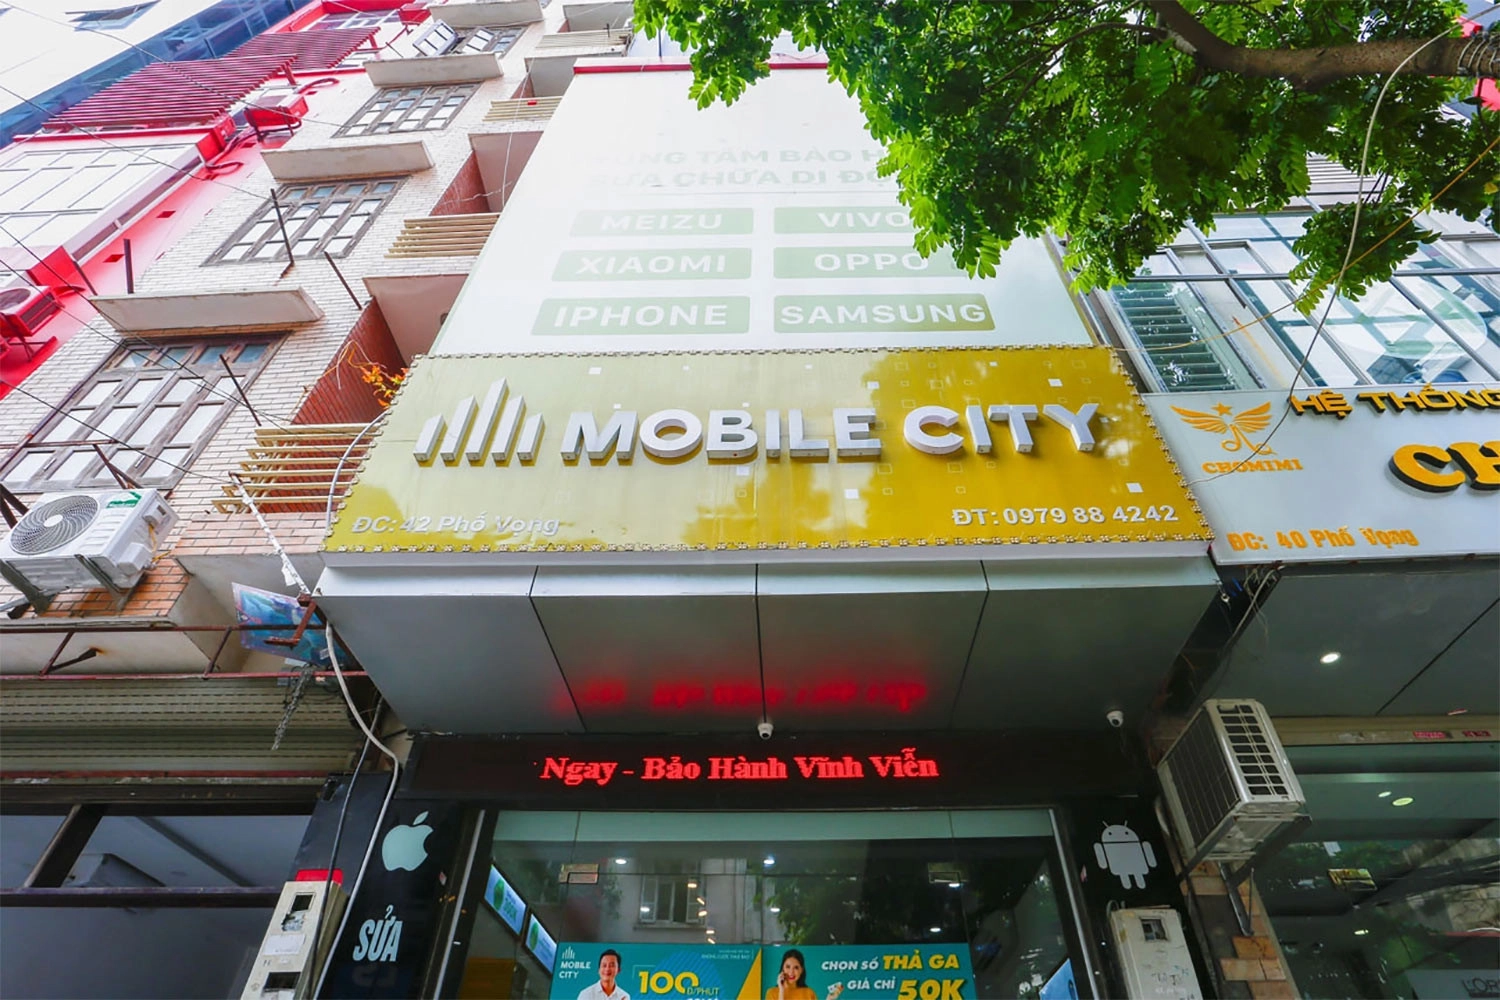 Thay Pin iPhone 7, Địa chỉ thay Pin iPhone 7 tại Hà Nội, Đà Nẵng, Tp.HCM